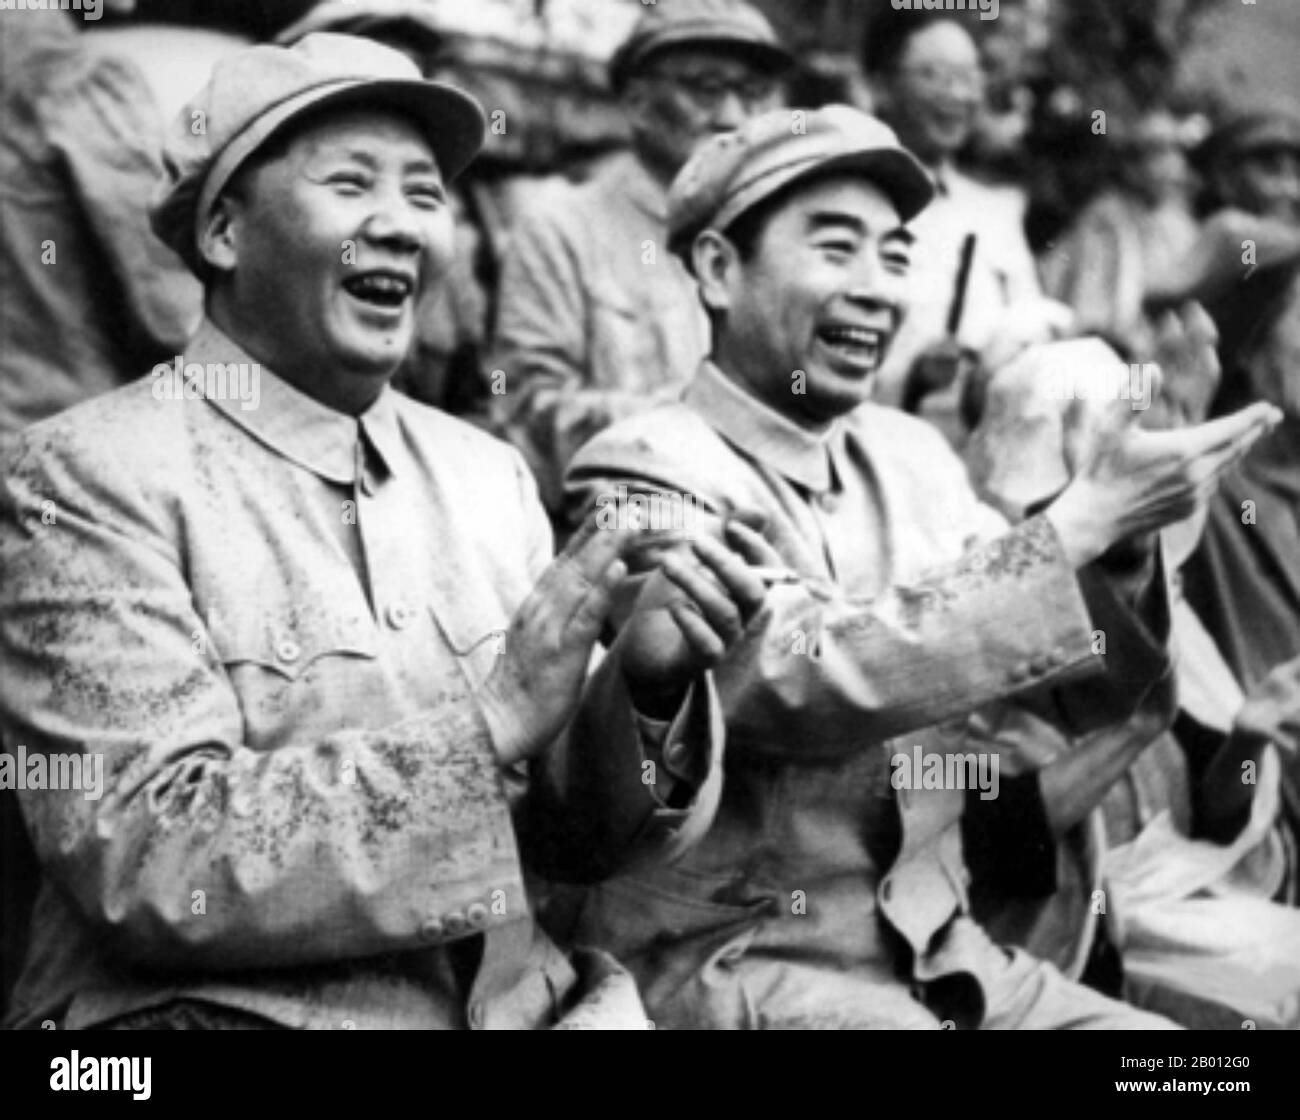 China: Mao Zedong und Zhou Enlai saßen zusammen und klatschten, c. 1952. Mao Zedong, auch transliteriert als Mao Tse-tung, chinesischer kommunistischer Revolutionär, Guerilla-Kriegsstratege, Autor, politischer Theoretiker, Und Führer der chinesischen Revolution. Allgemein als Vorsitzender Mao bezeichnet, war er seit seiner Gründung im Jahr 1949 der Architekt der Volksrepublik China (PRC) und hatte bis zu seinem Tod im Jahr 1976 die autoritäre Kontrolle über die Nation. Zhou Enlai war der erste Premierminister der Volksrepublik China und diente von Oktober 1949 bis zu seinem Tod im Januar 1976. Stockfoto